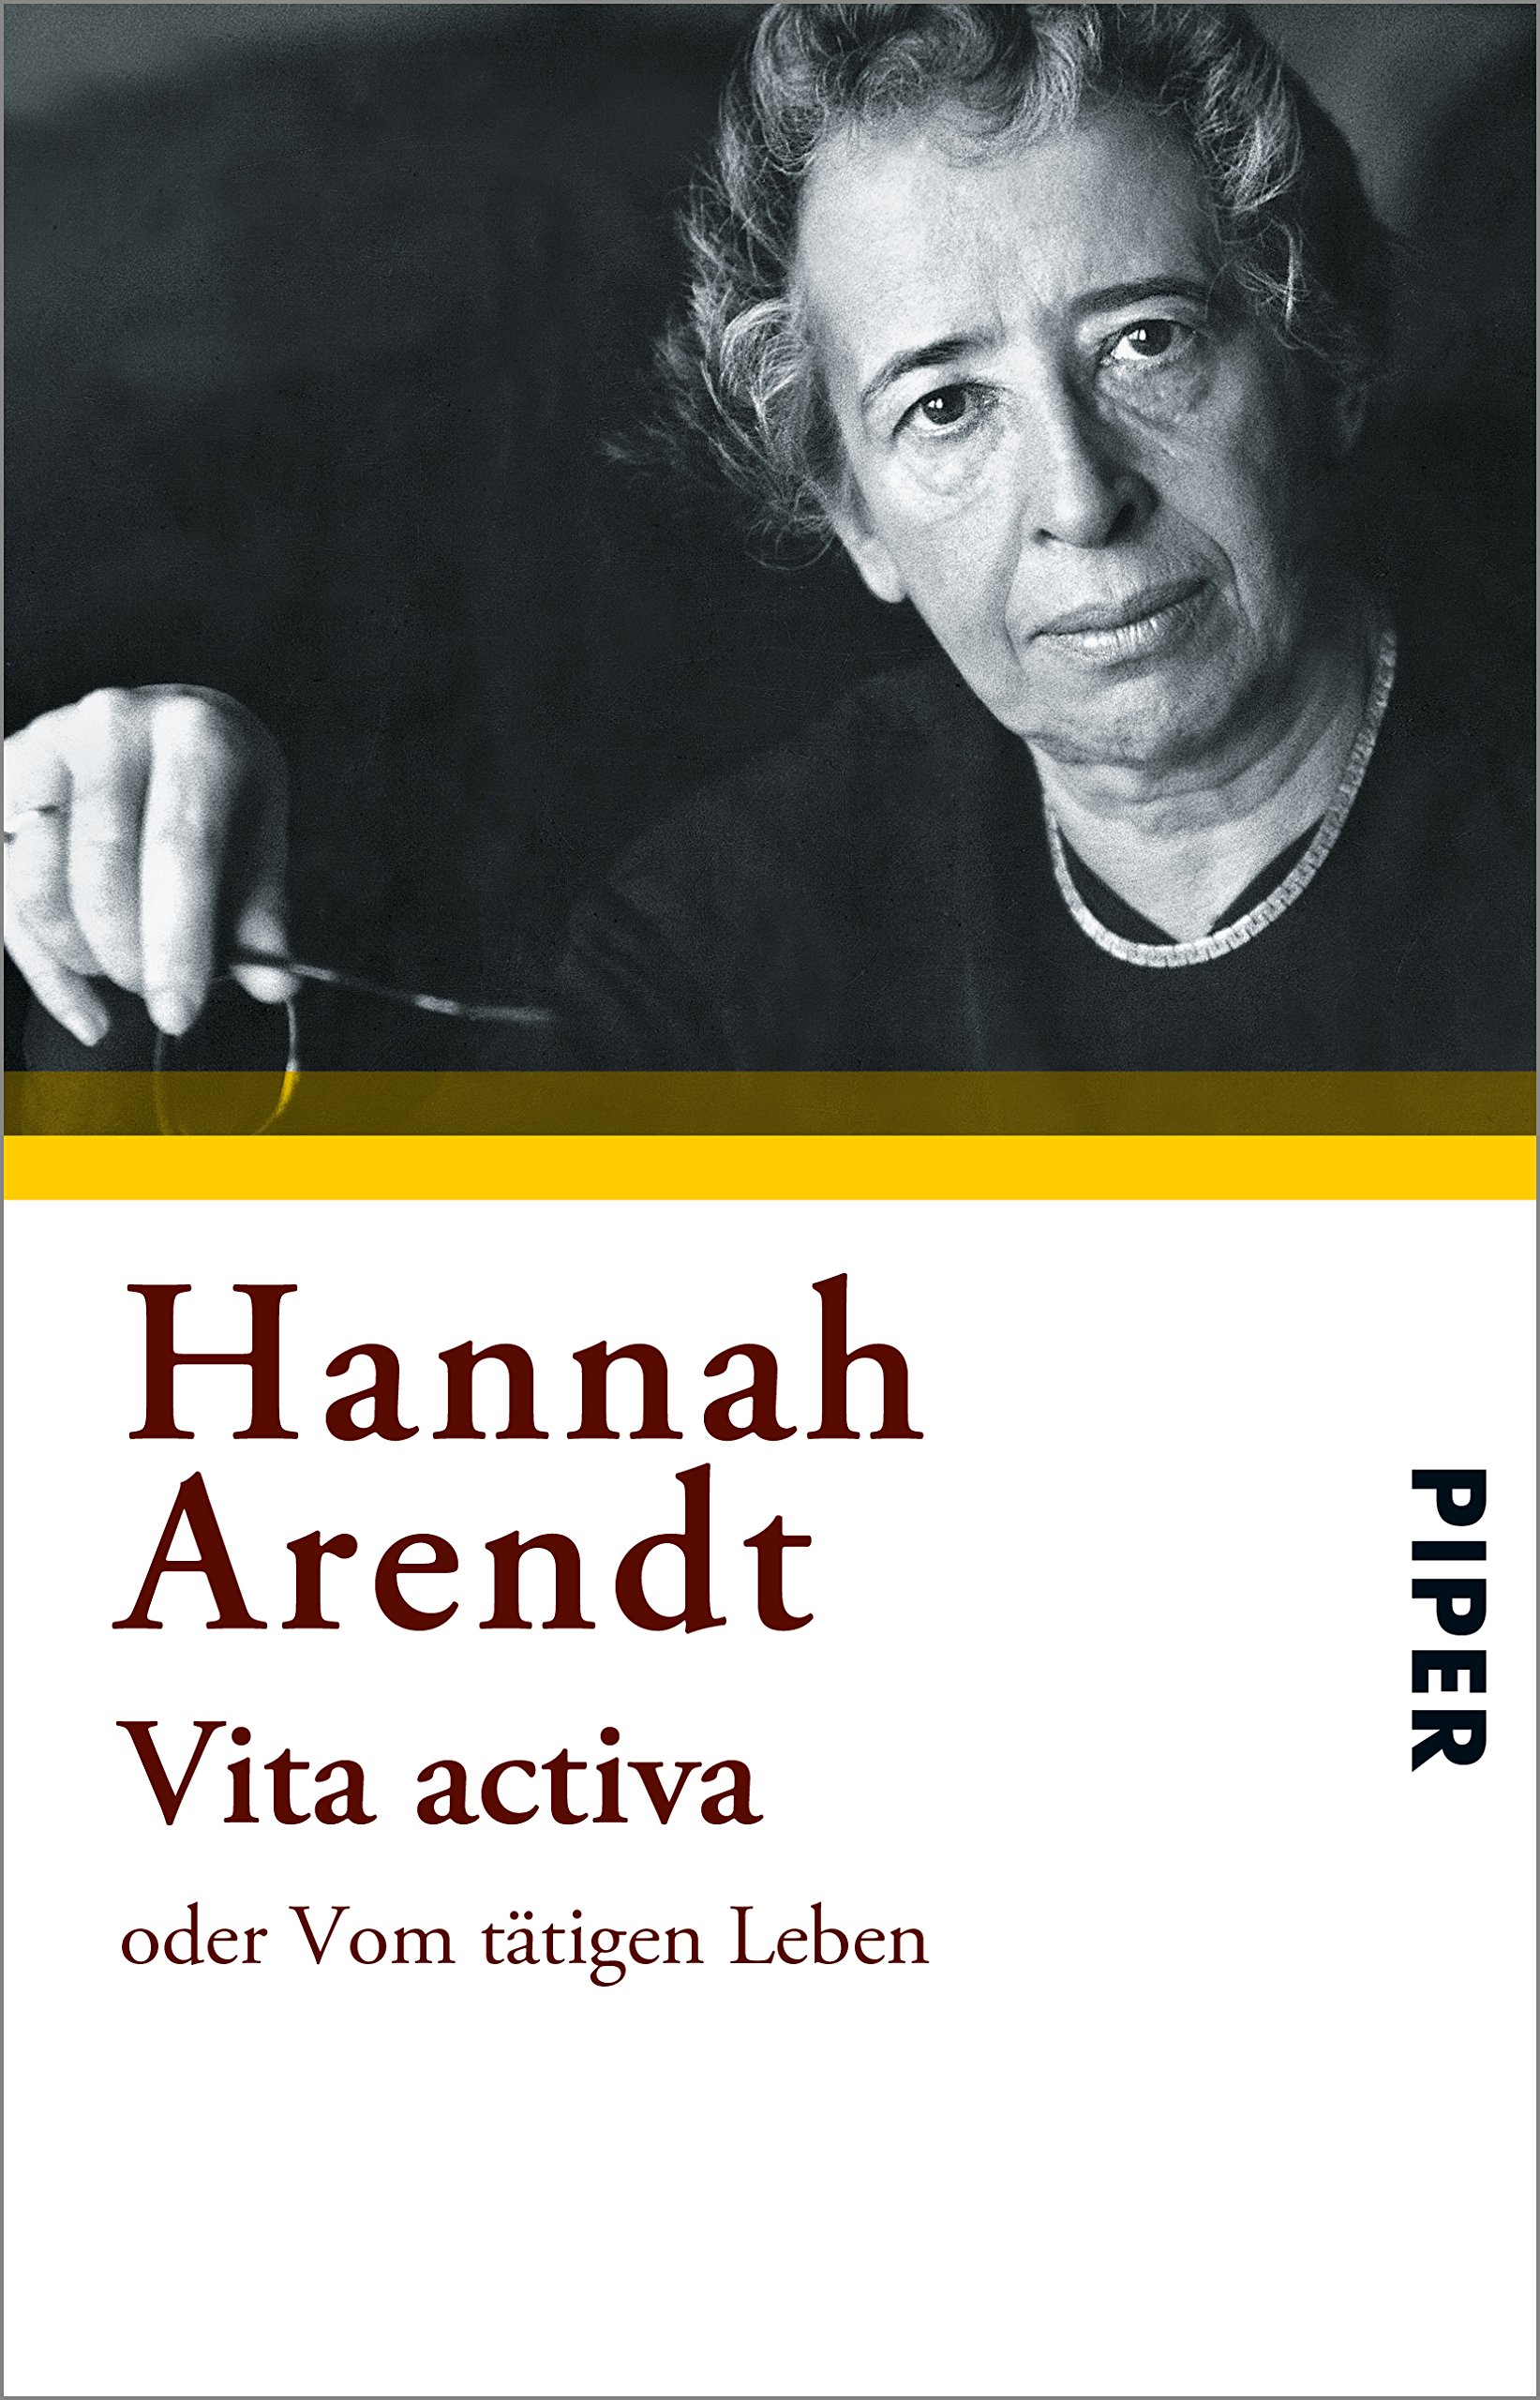 2022: Hannah Arendt's Vita Activa